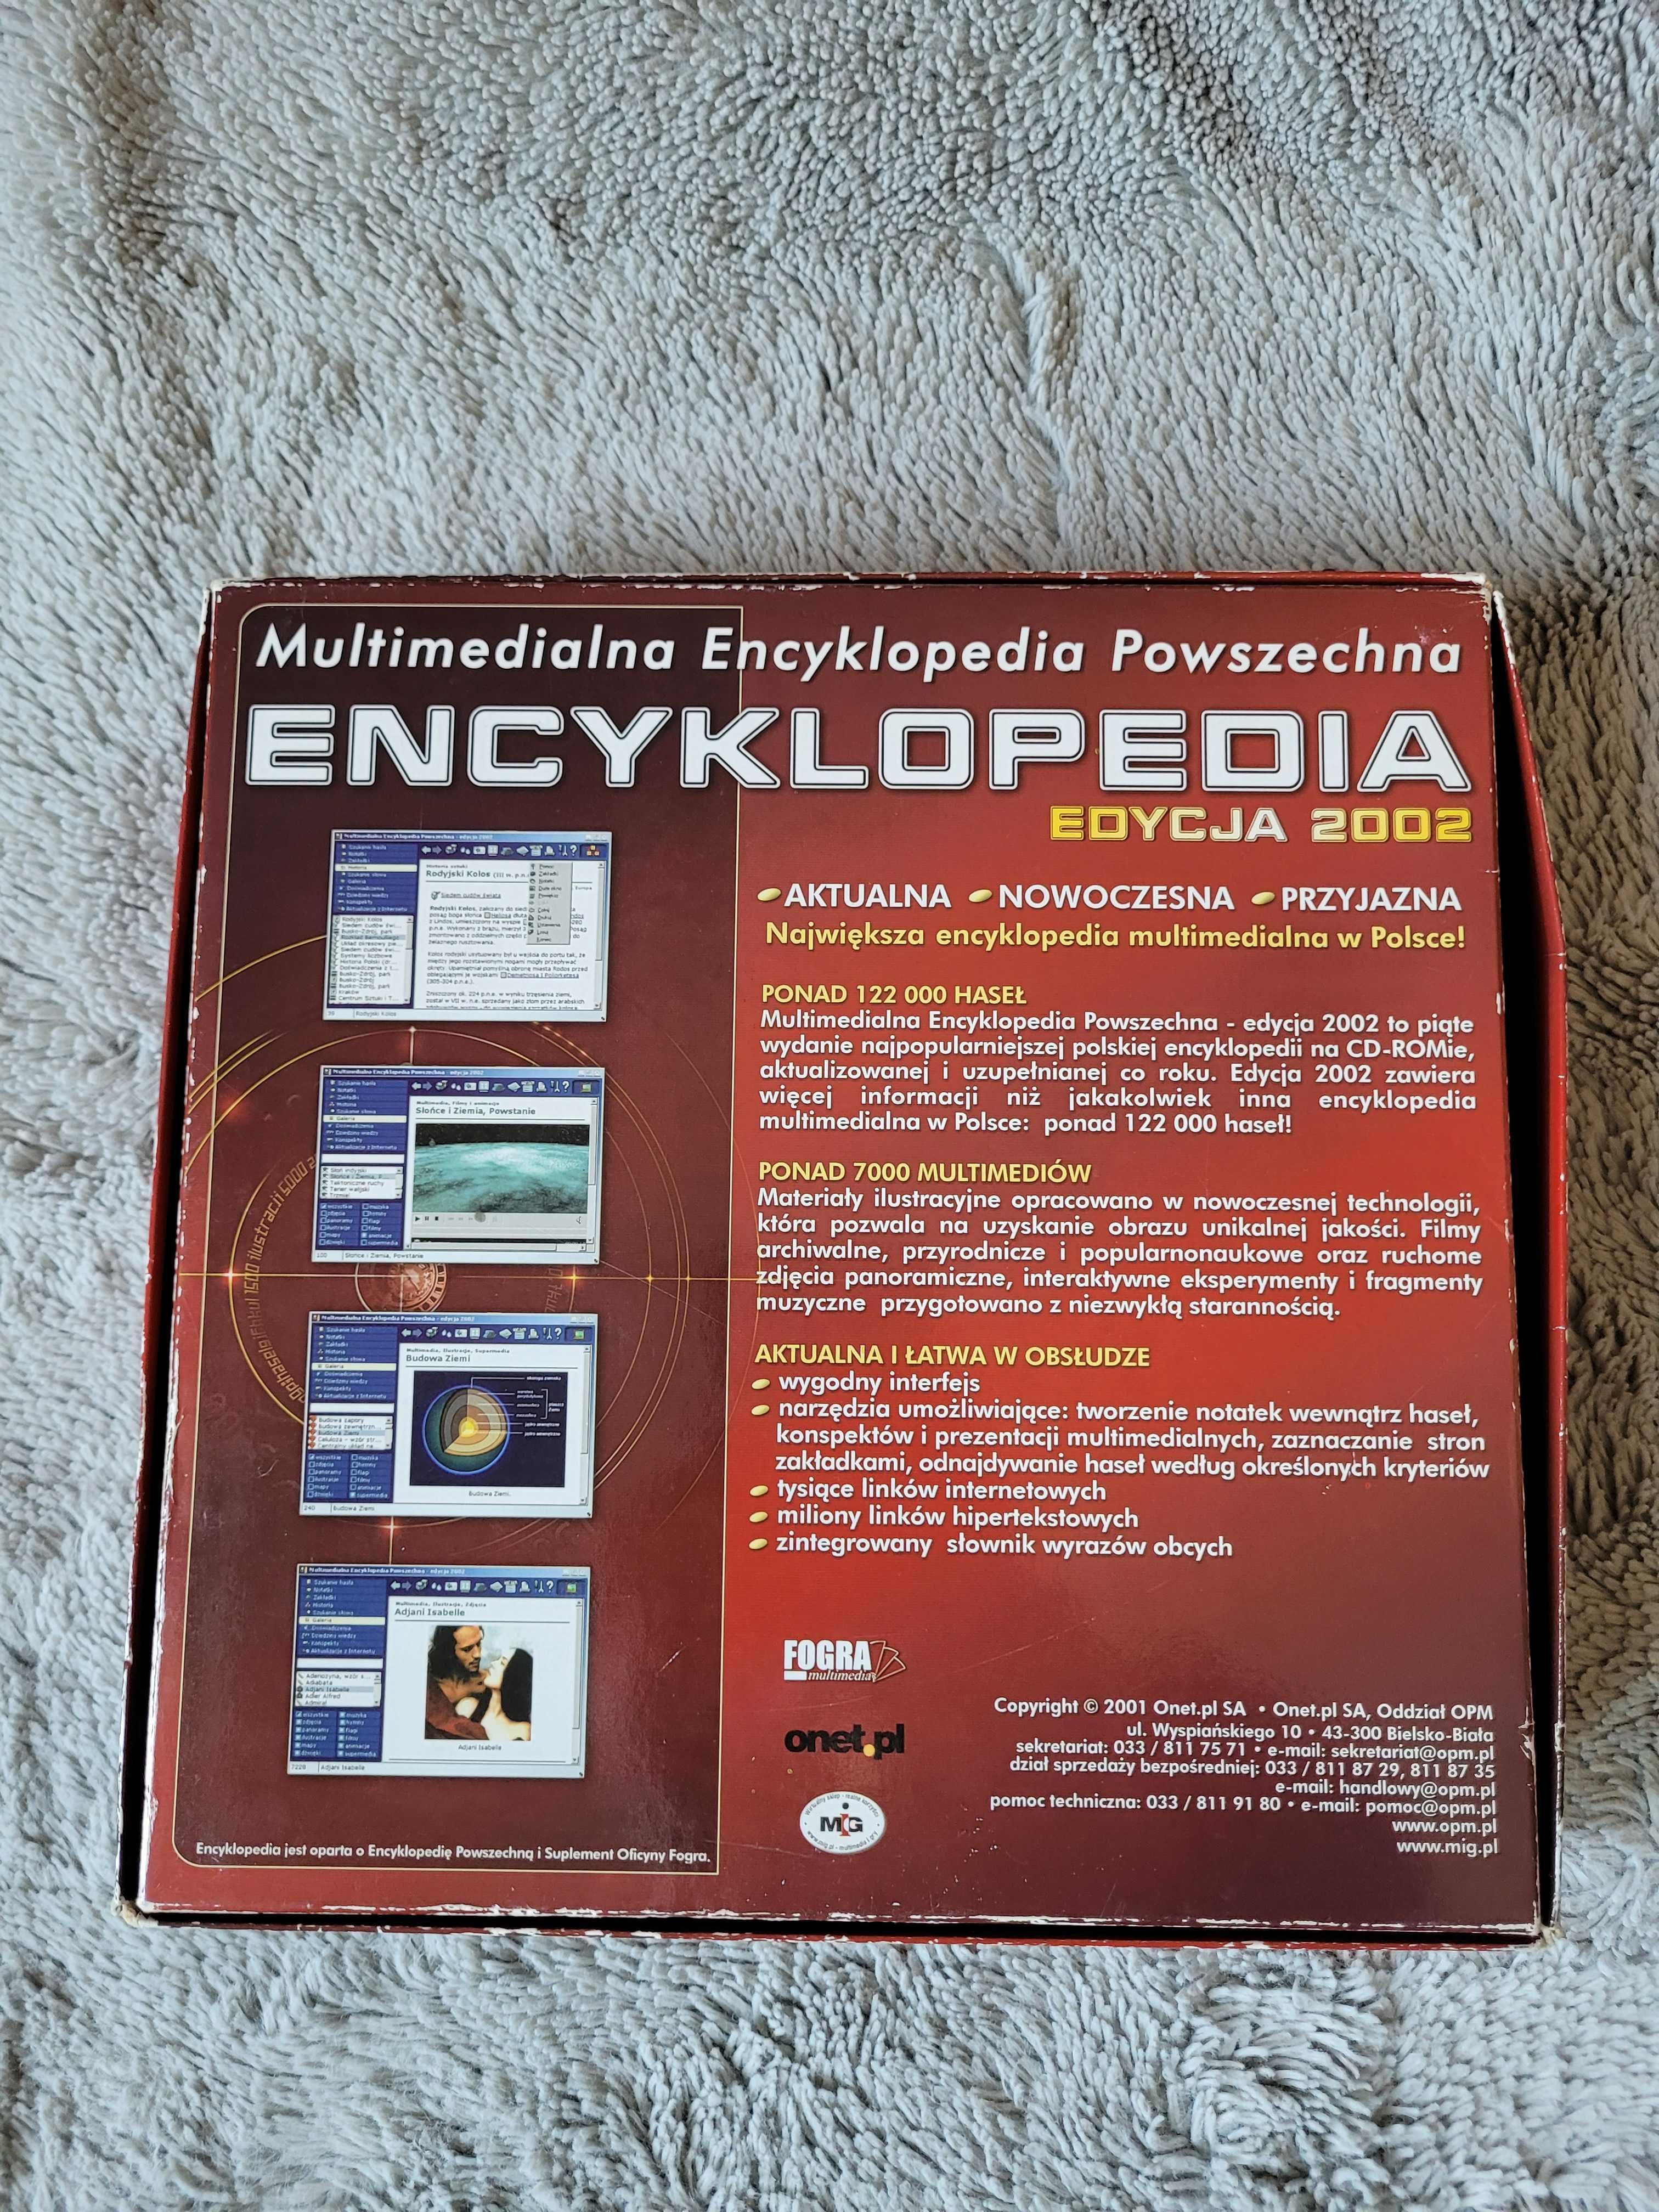 OKAZJA! Multimedialna encyklopedia wiedzy powszechnej PC 5 płyt!